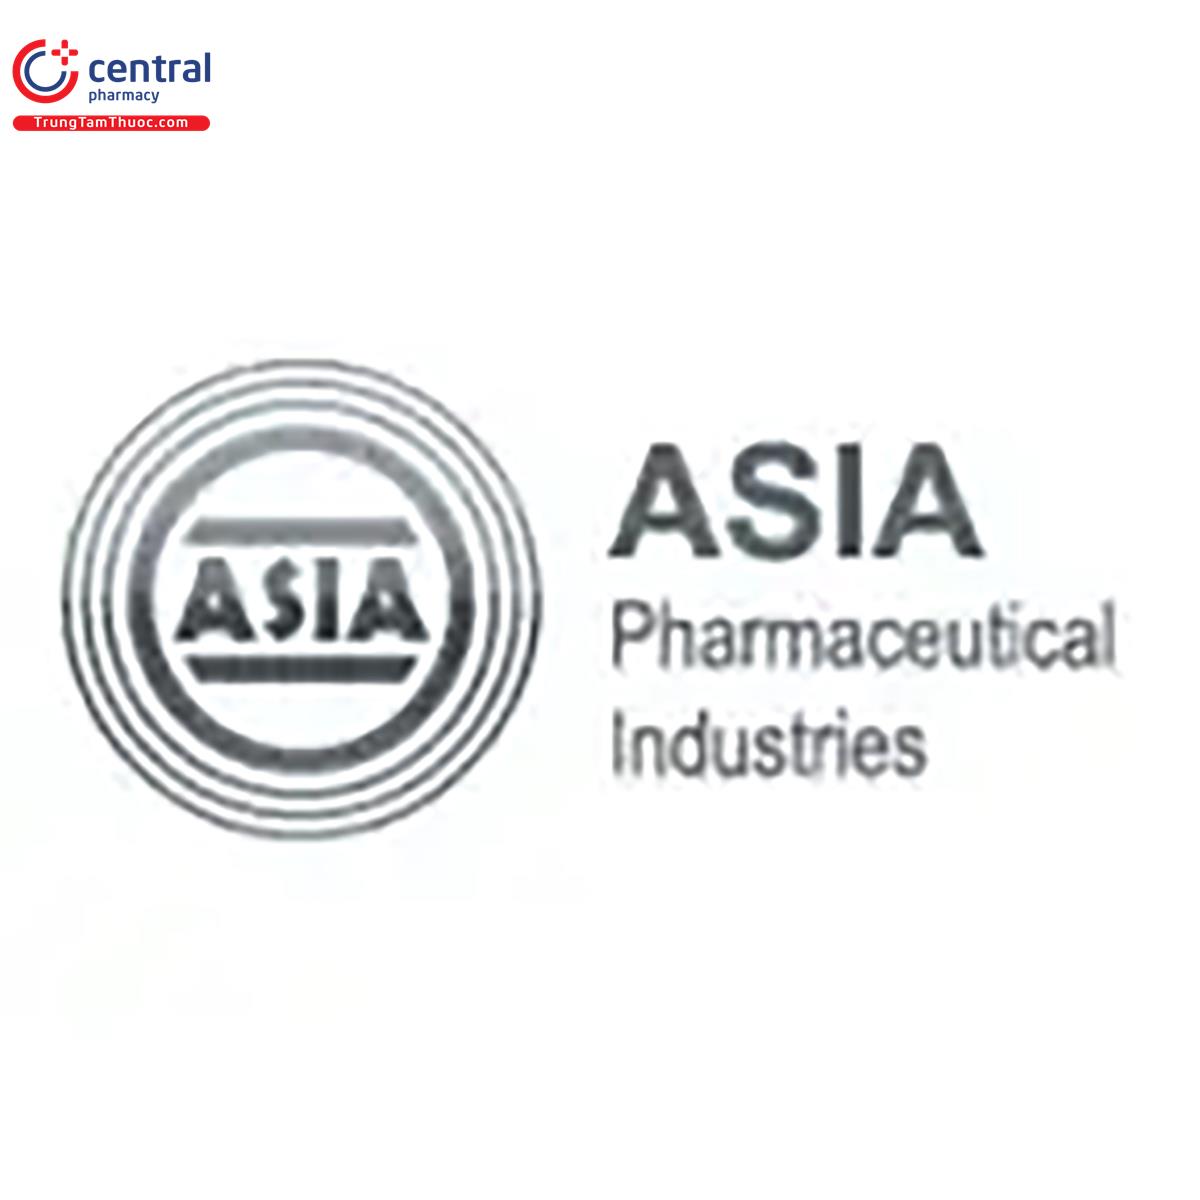 ASIA Pharmaceutical